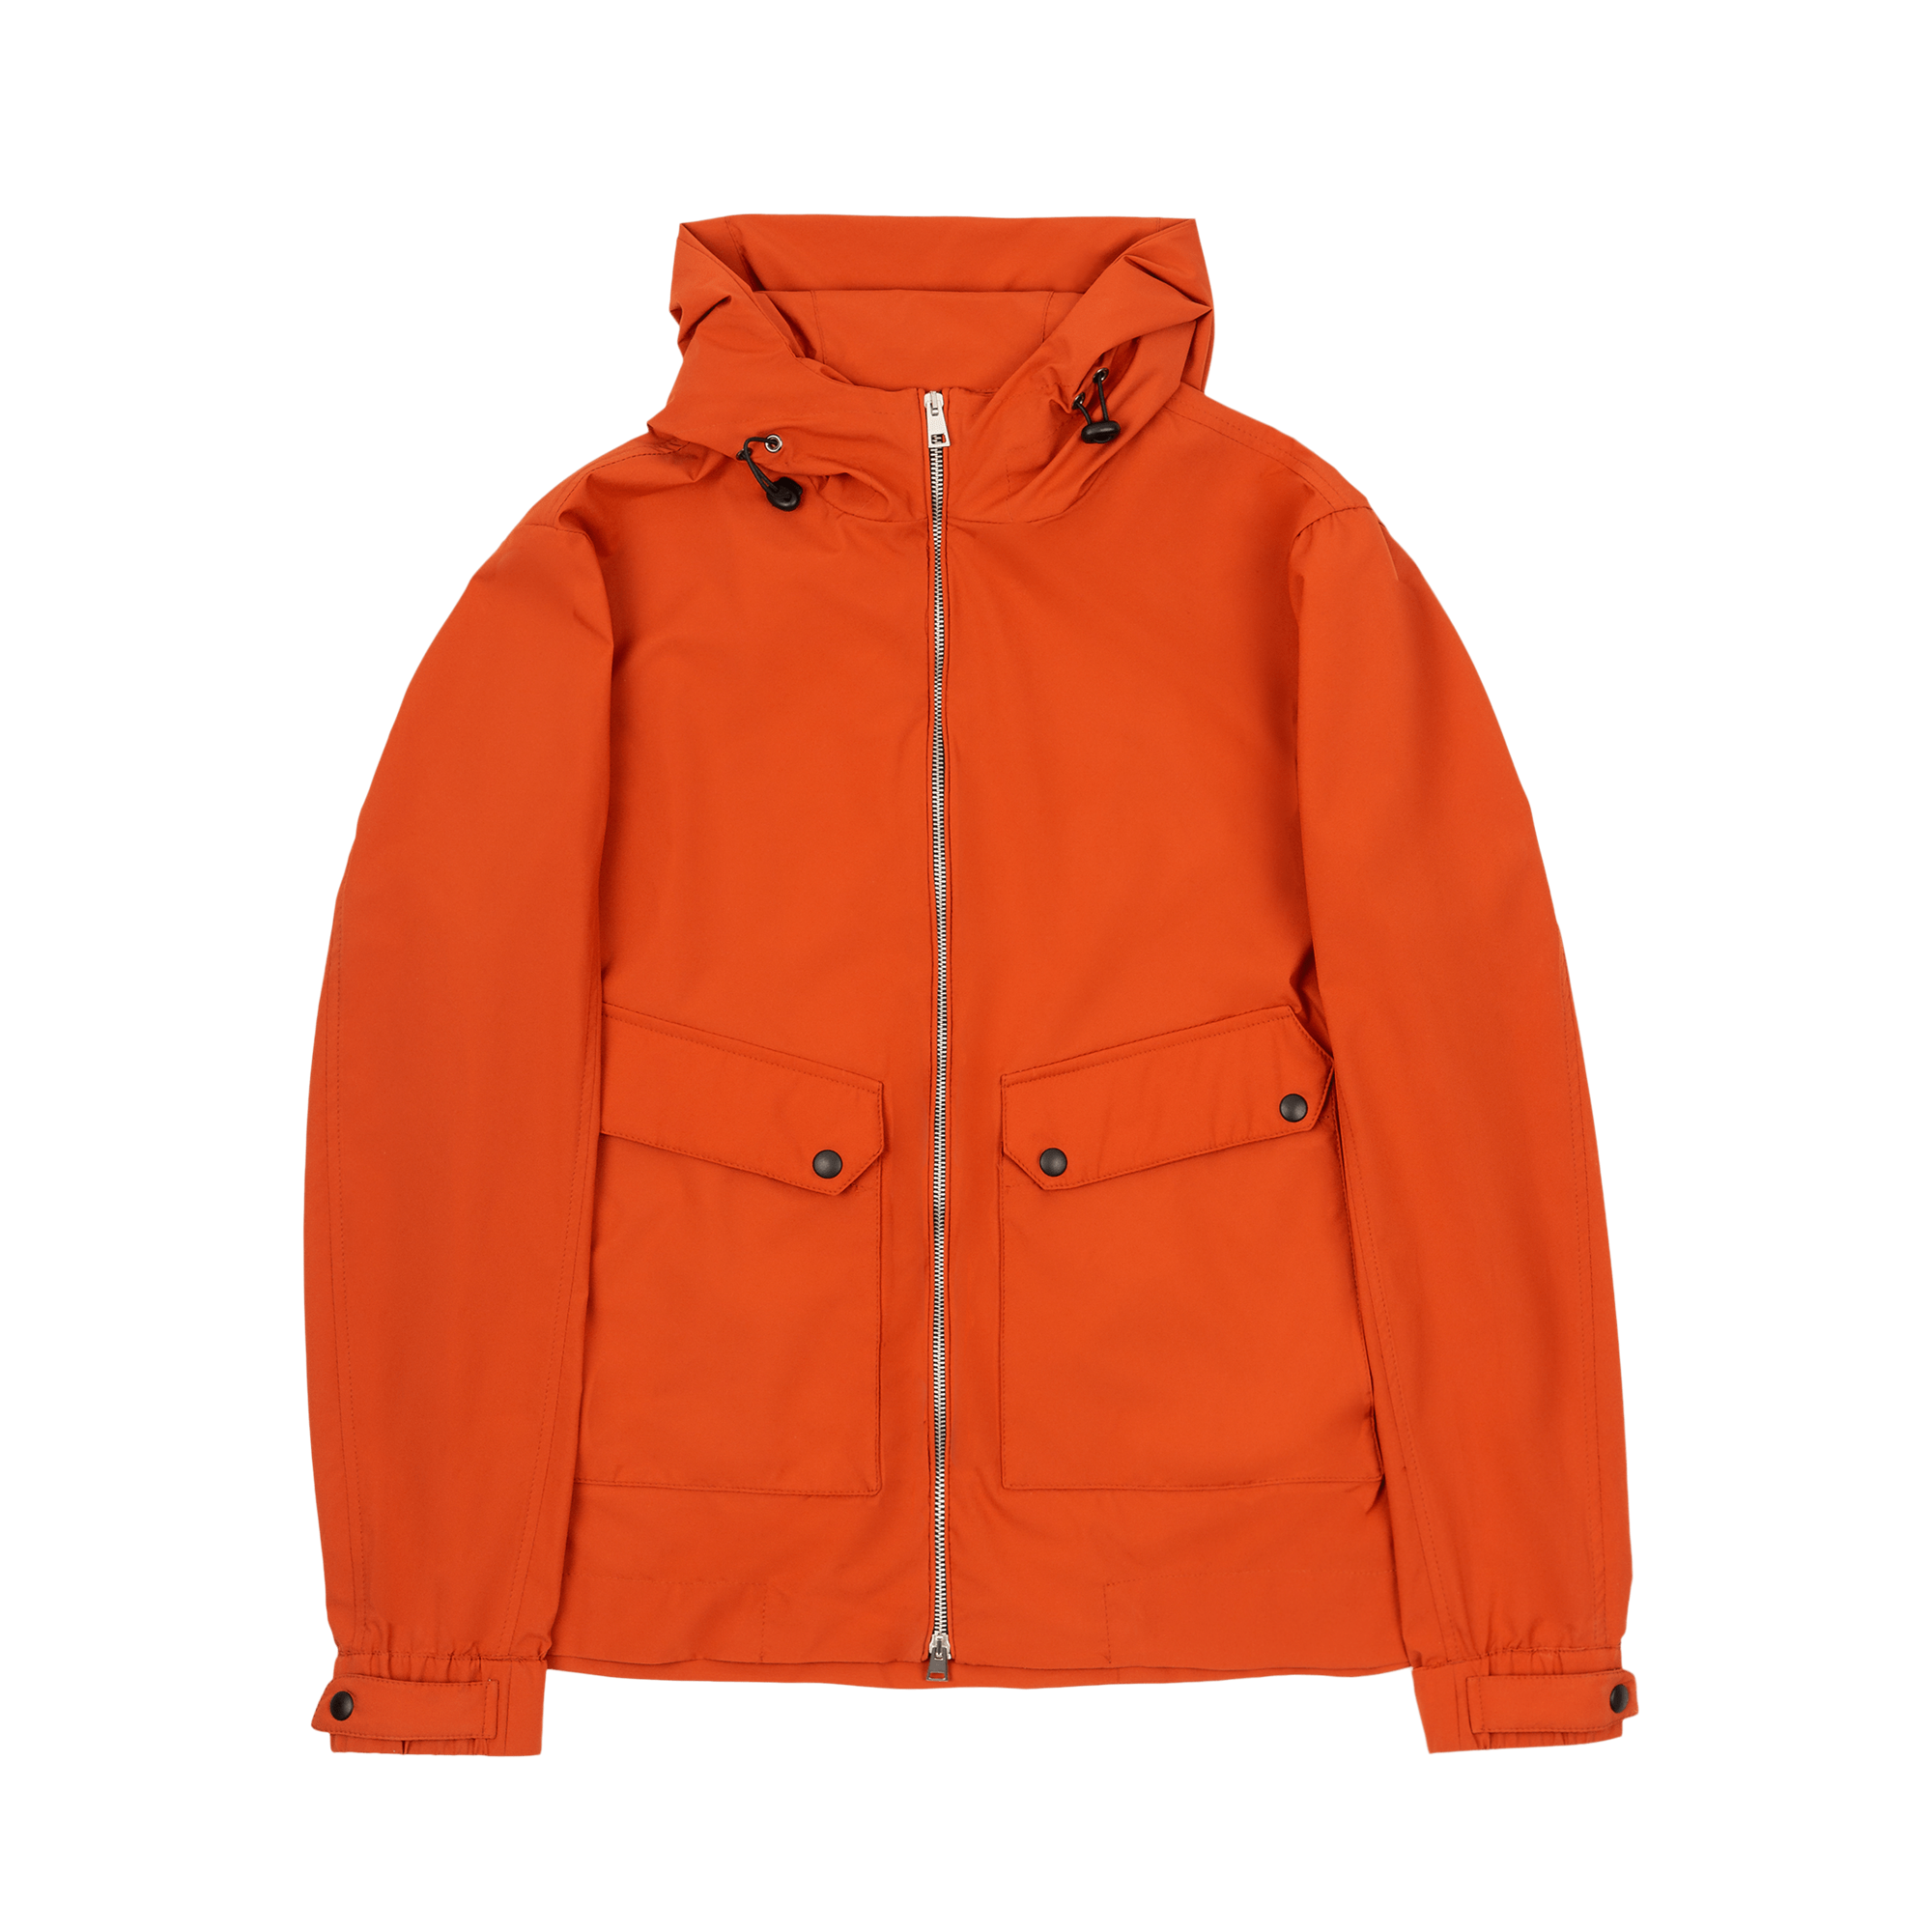 Men's Orange Windbreaker Jacket